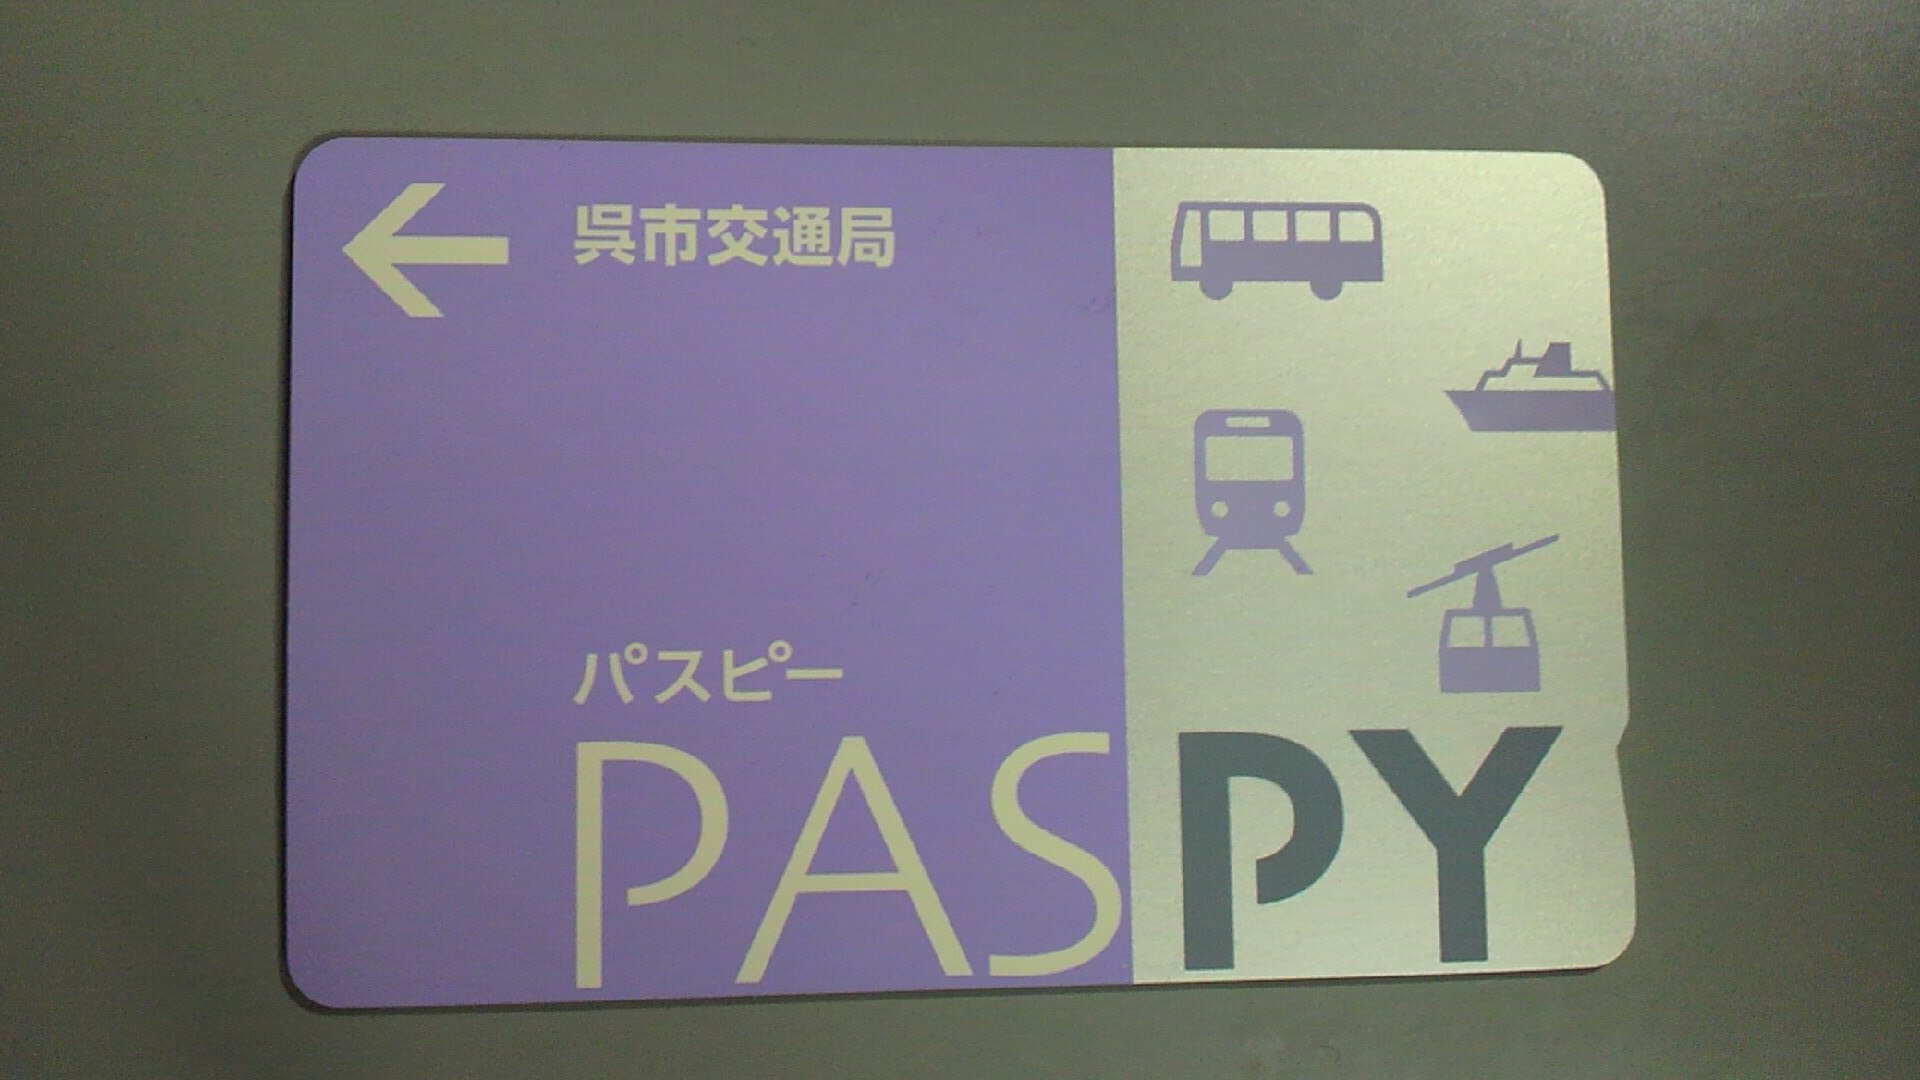 激レア！PASPY パスピー 「呉市交通局」デザイン交通系IC超レア - 鉄道